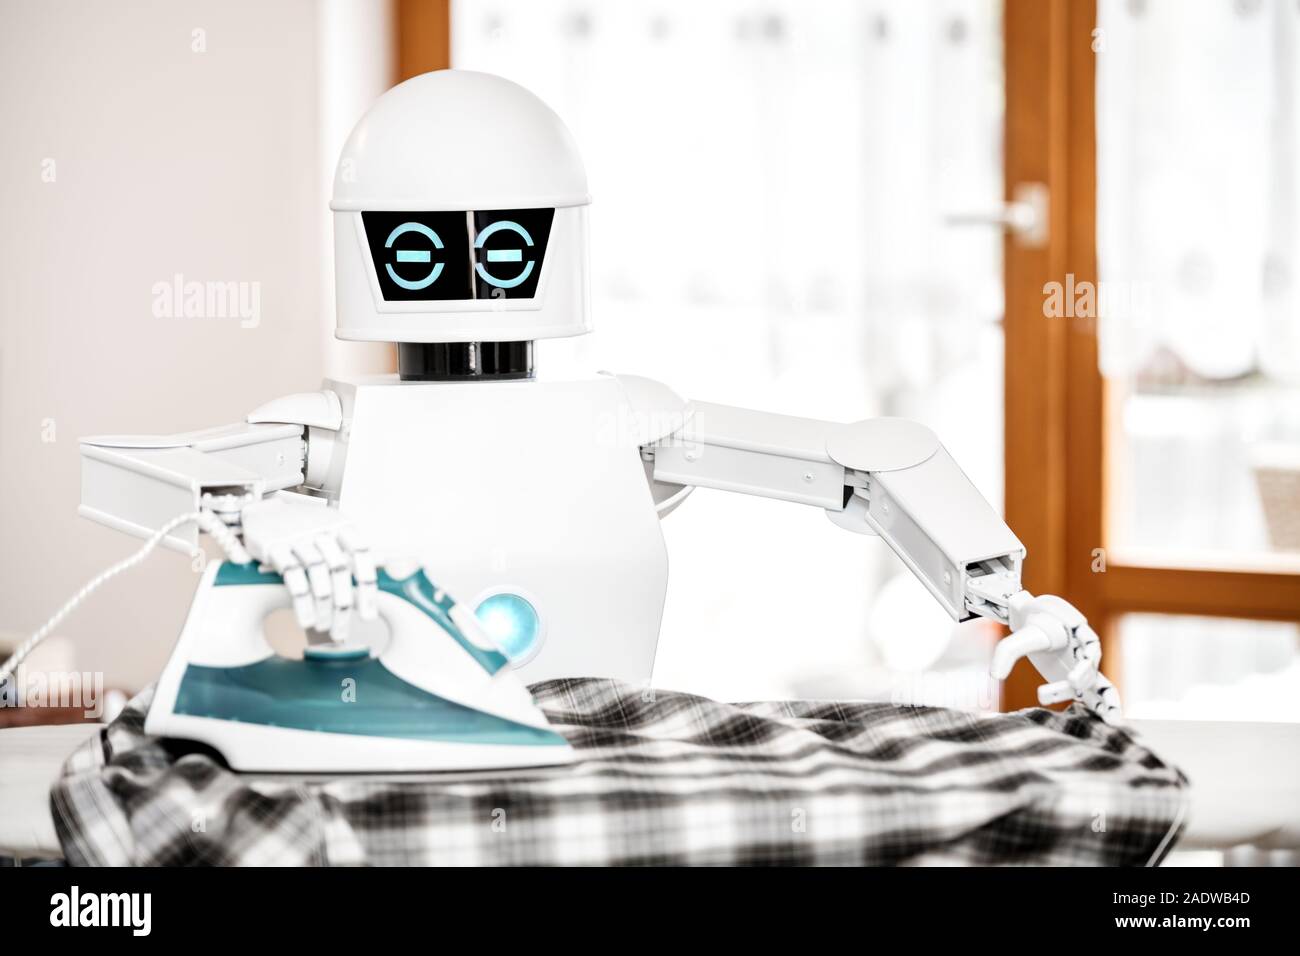 Effie, le nouveau robot qui repasse les vêtements à votre place (sans  coûter un bras) - CNET France